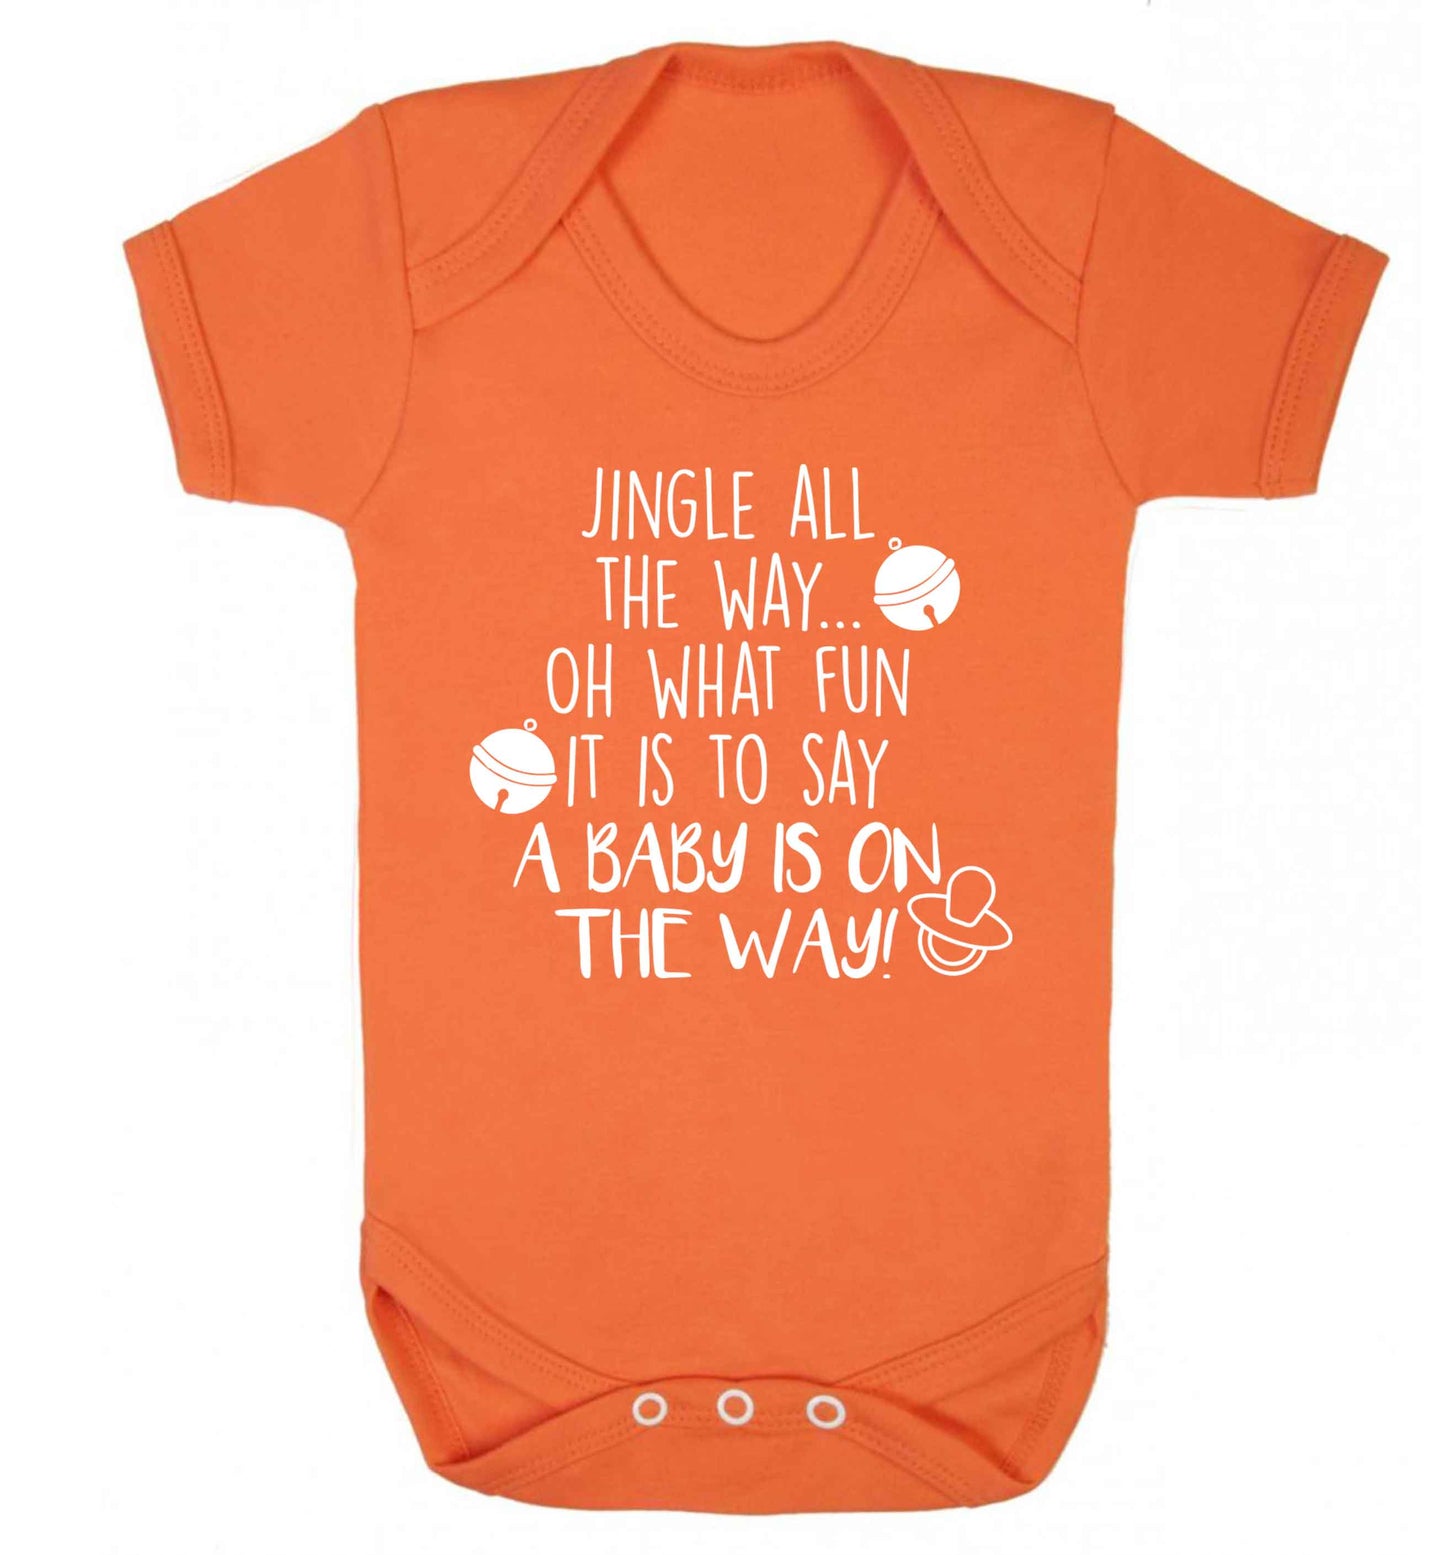 Oh what fun it is to say a baby is on the way! Baby Vest orange 18-24 months